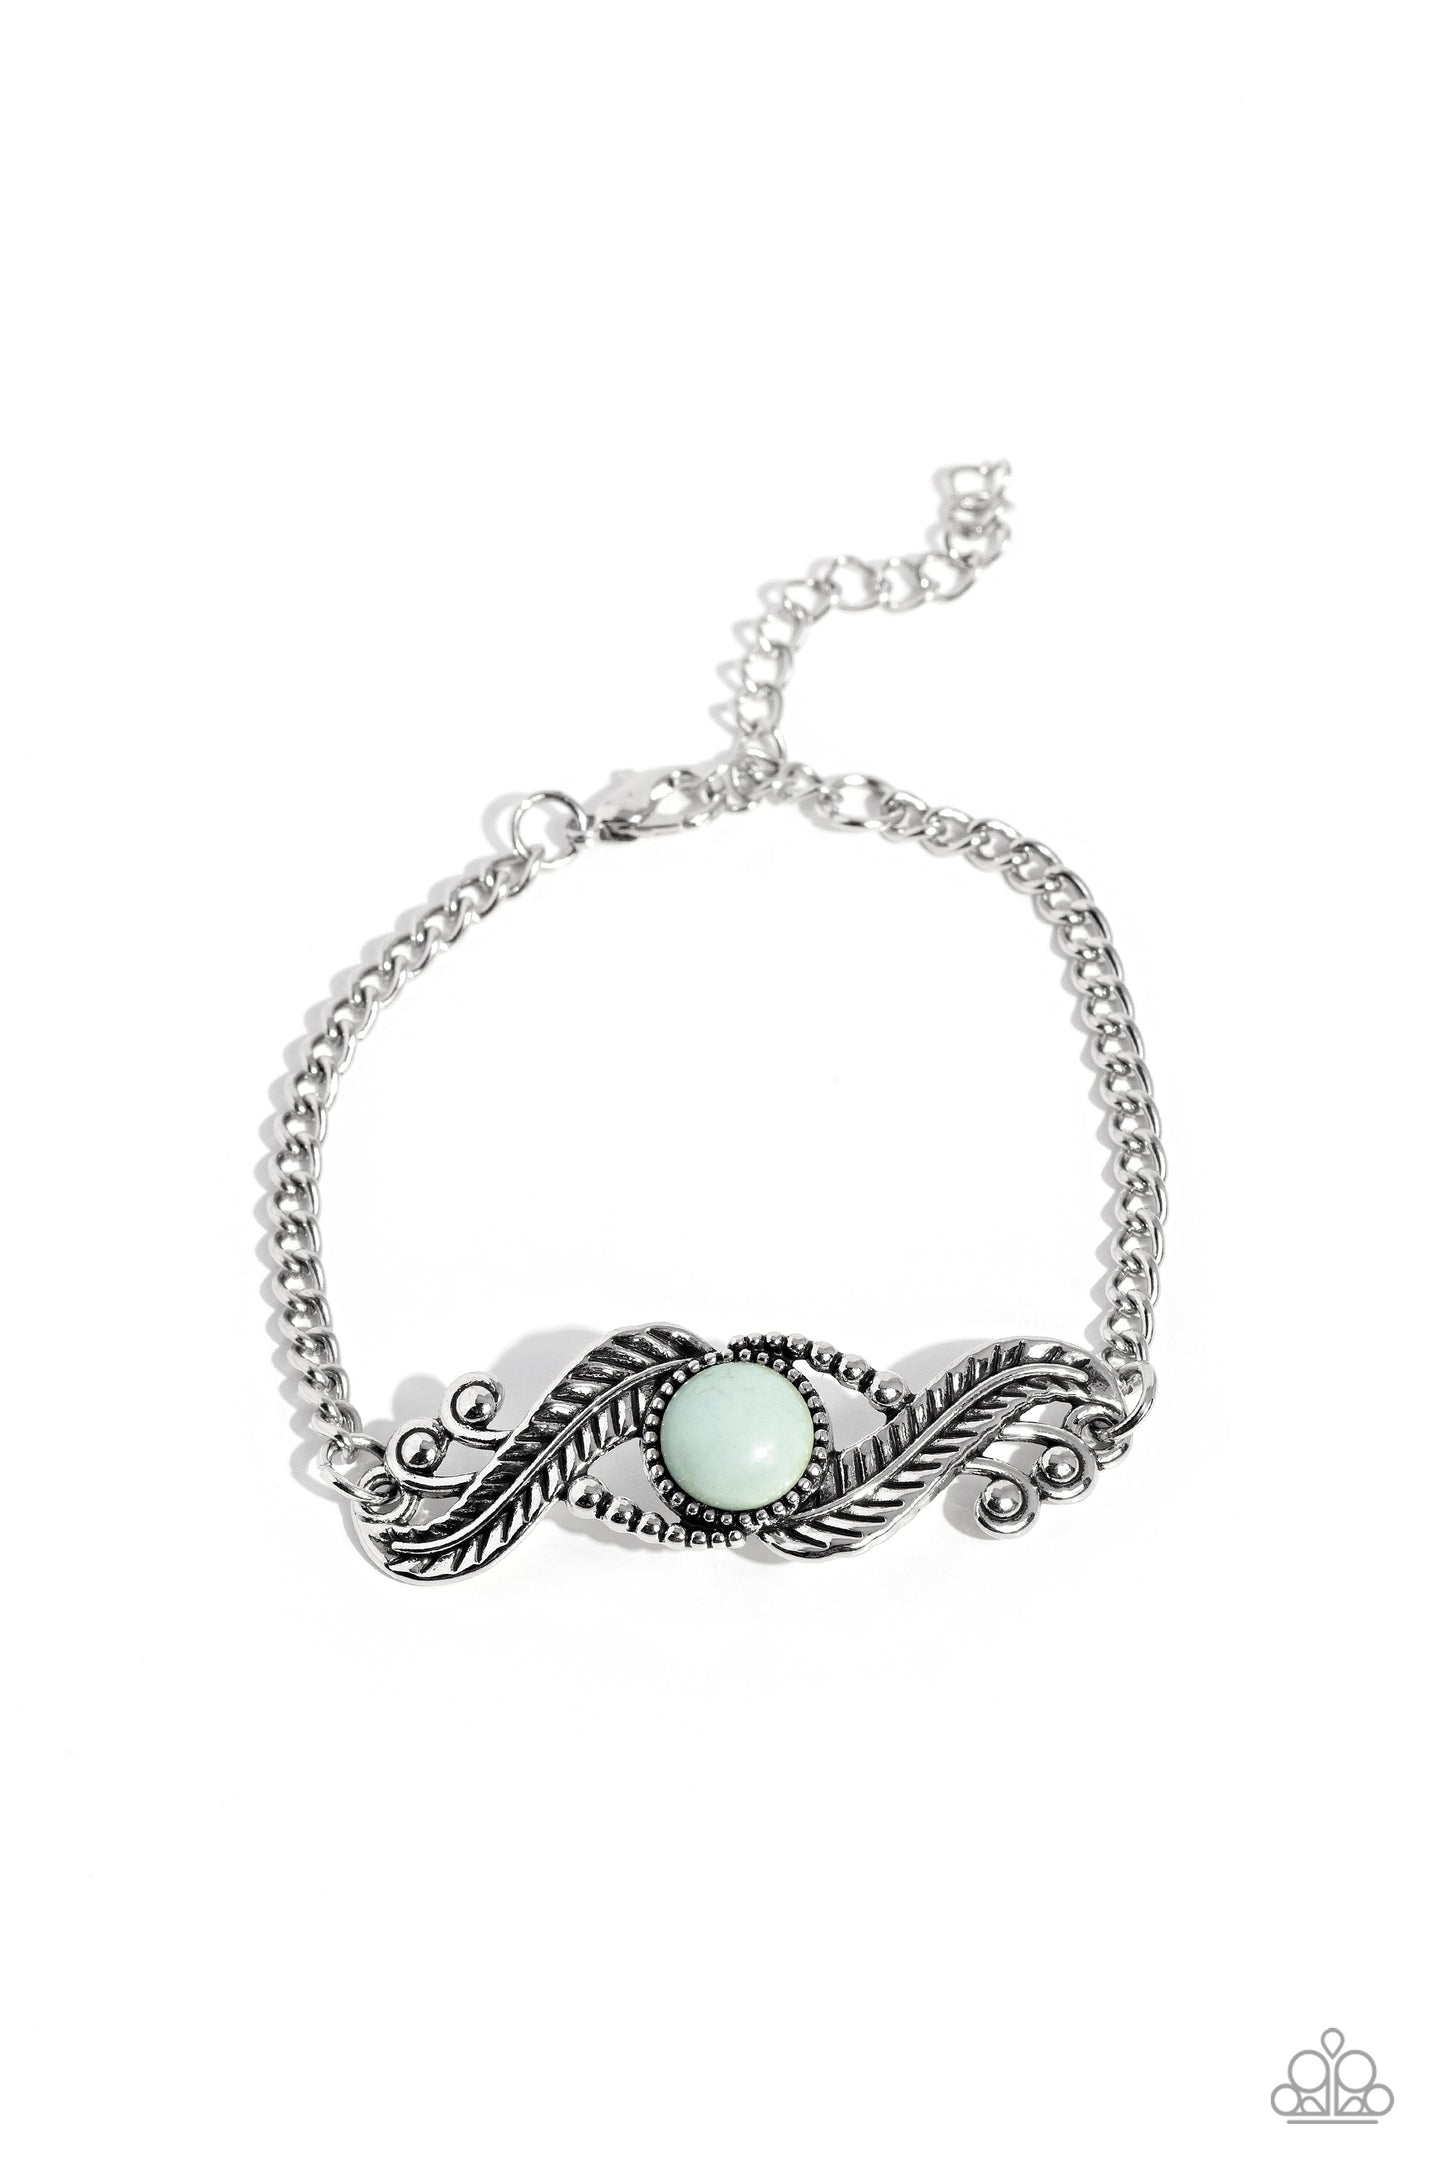 EYE Wish I May... Blue Necklace & Bracelet Set - Paparazzi Accessories